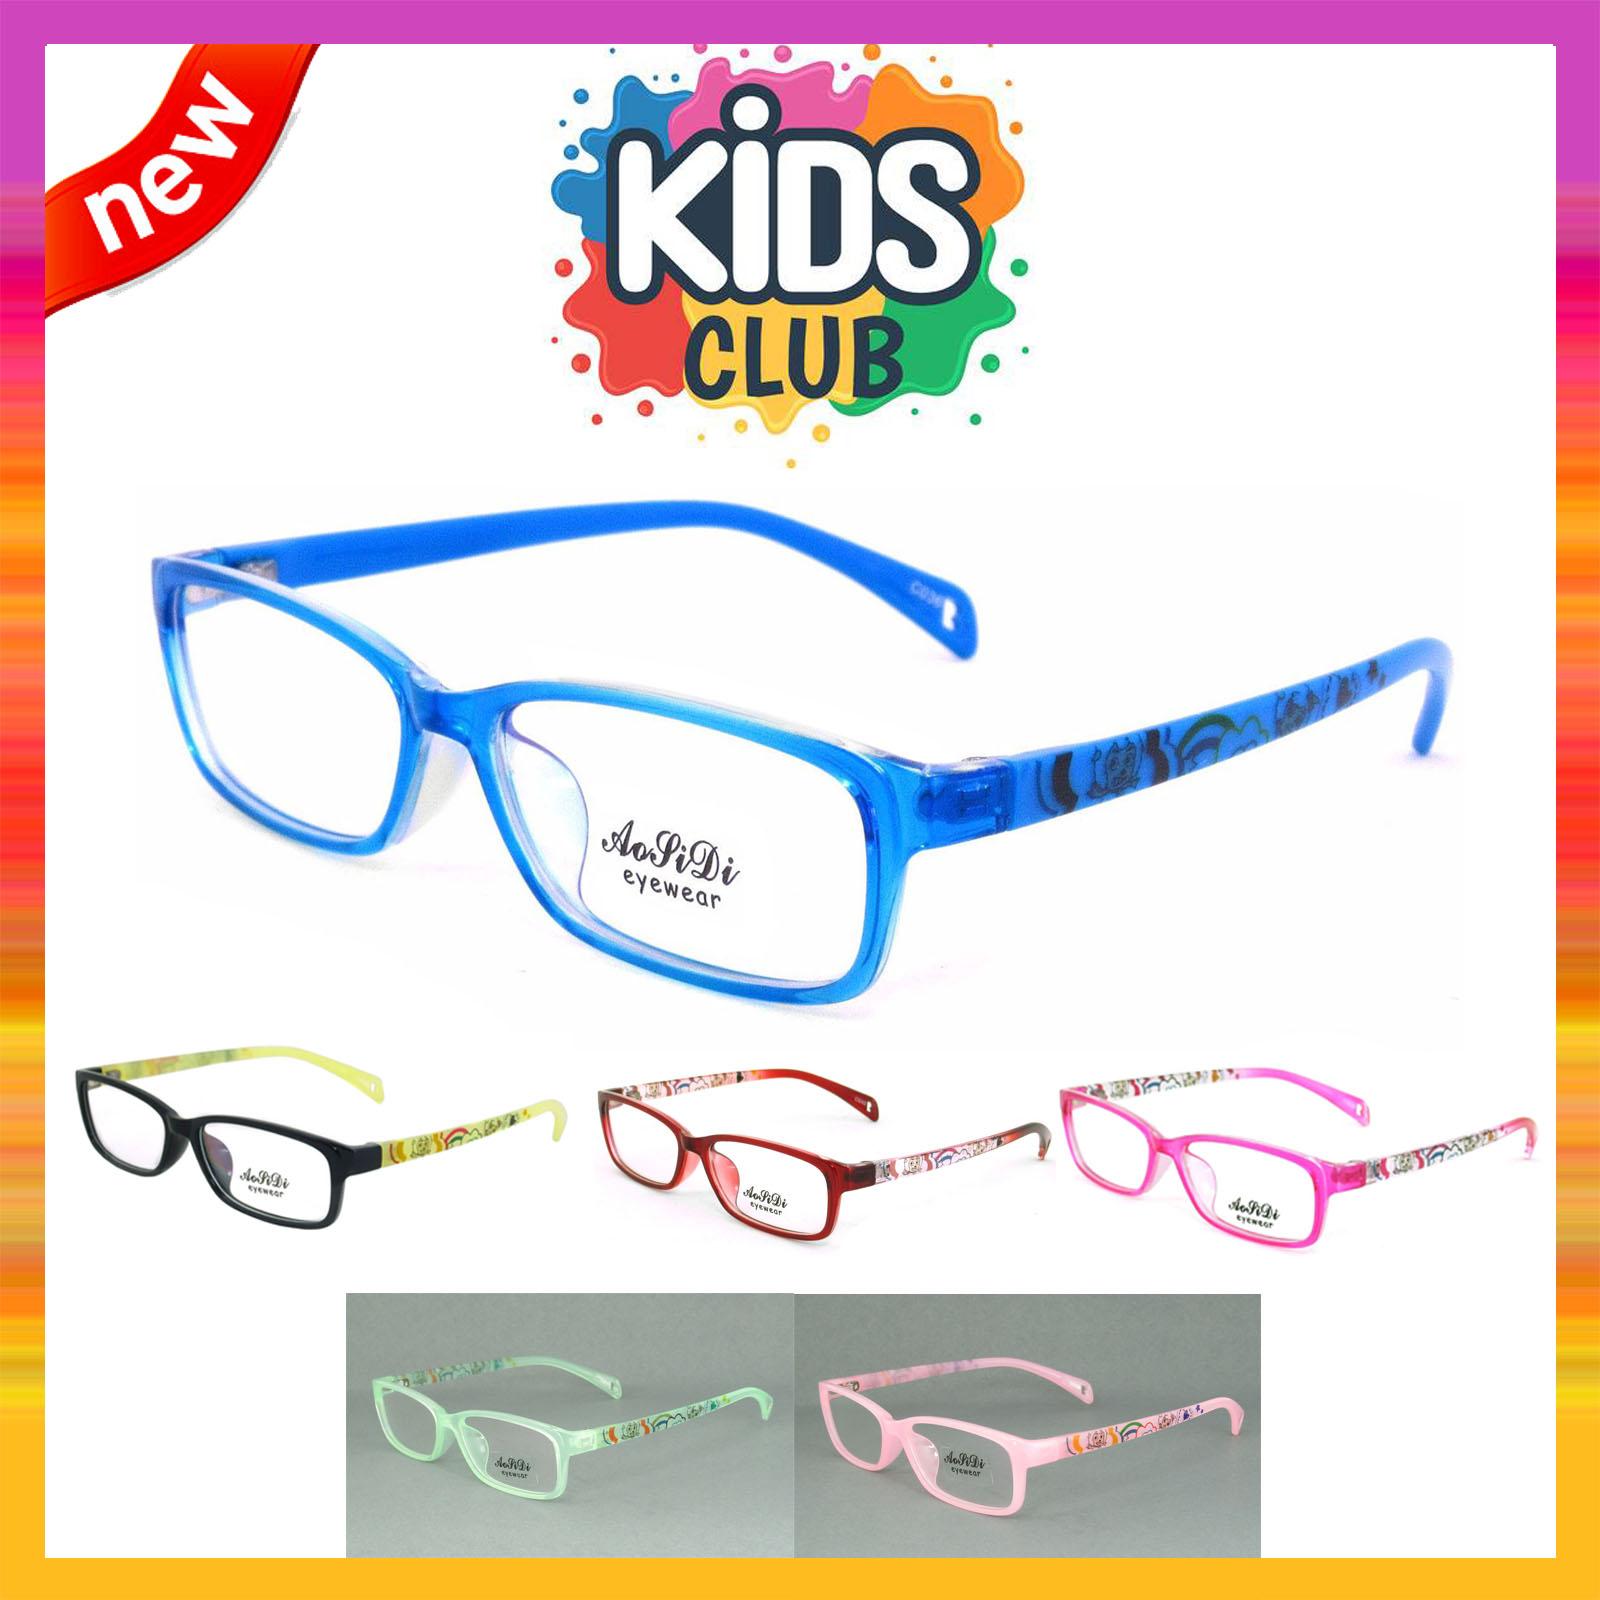 แว่นตาเกาหลีเด็ก Fashion Korea Children แว่นตาเด็ก รุ่น 1618 กรอบแว่นตาเด็ก Rectangle ทรงสี่เหลี่ยมผืนผ้า Eyeglass baby frame ( สำหรับตัดเลนส์ ) วัสดุ PC เบา ขาข้อต่อ Kid leg joints Plastic Grade A material Eyewear Top Glasses